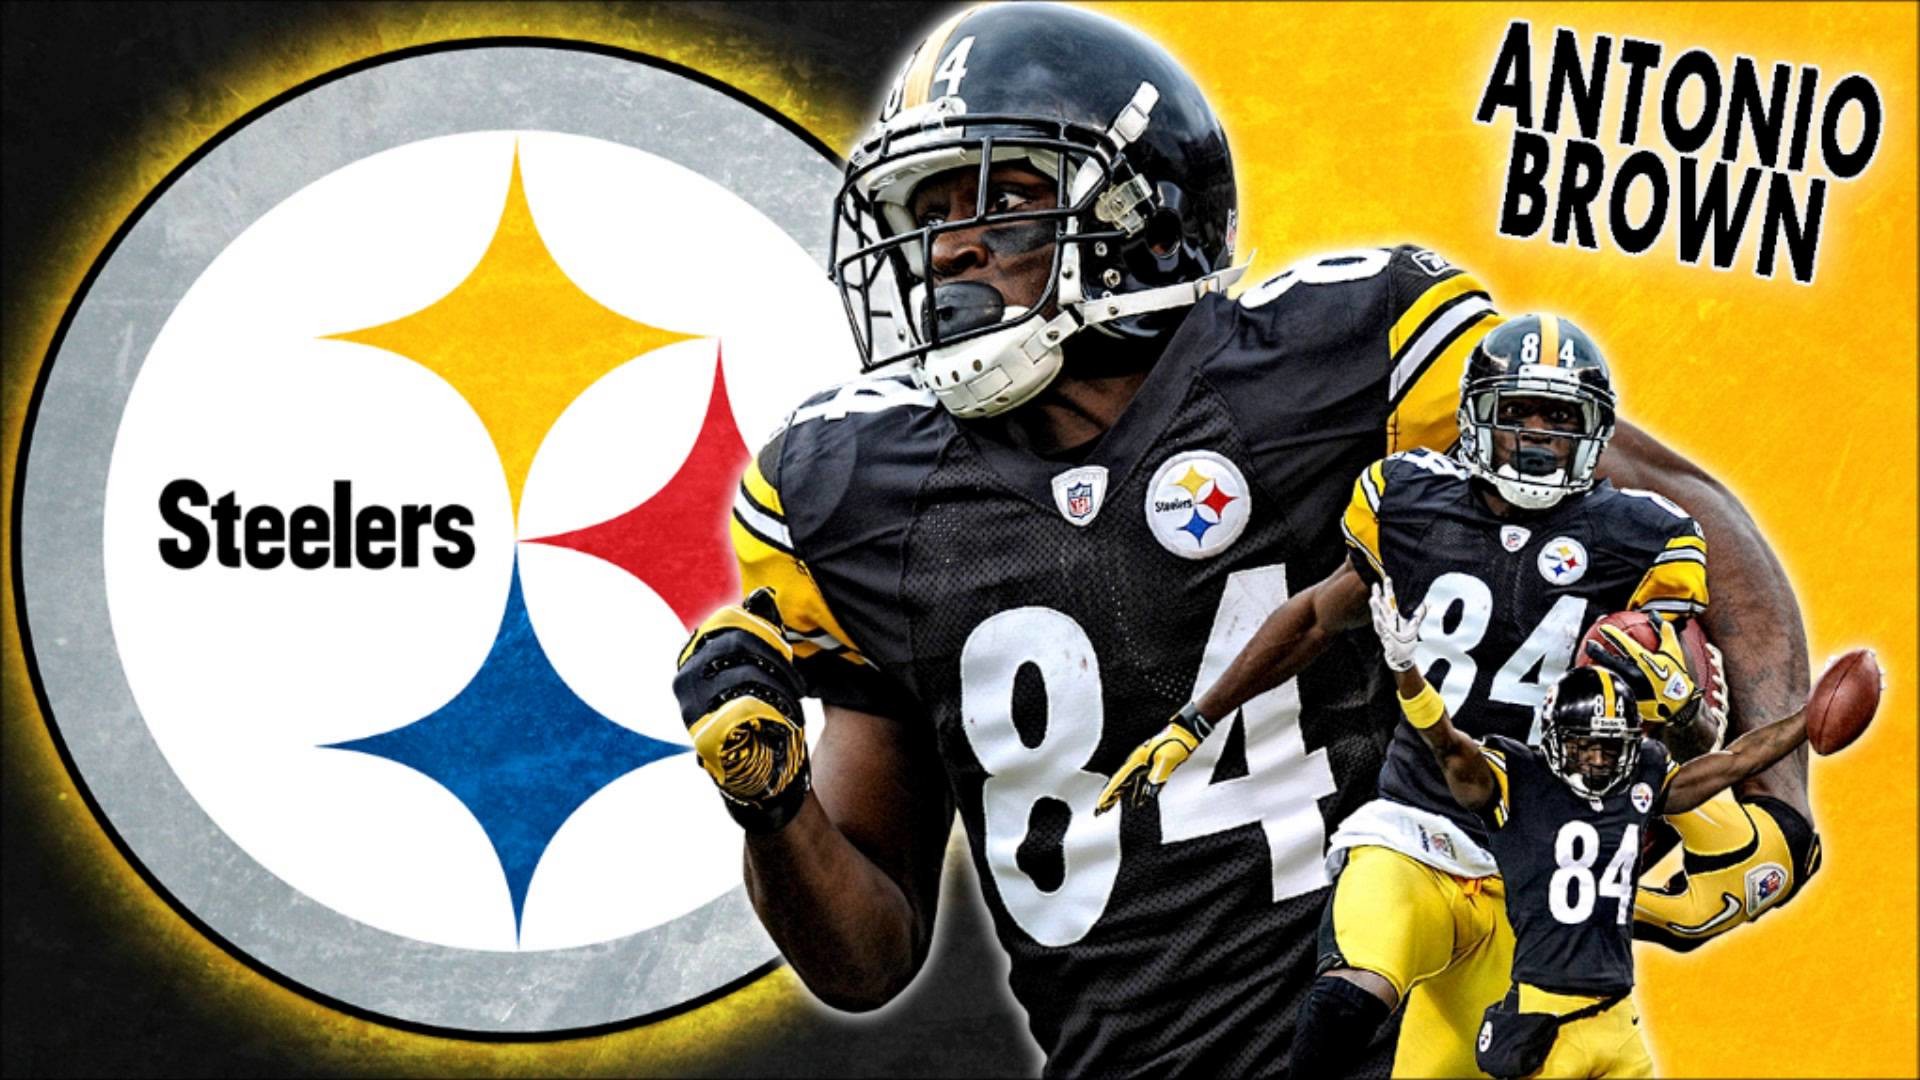 Steelers Antonio Brown Wallpaper HD Image